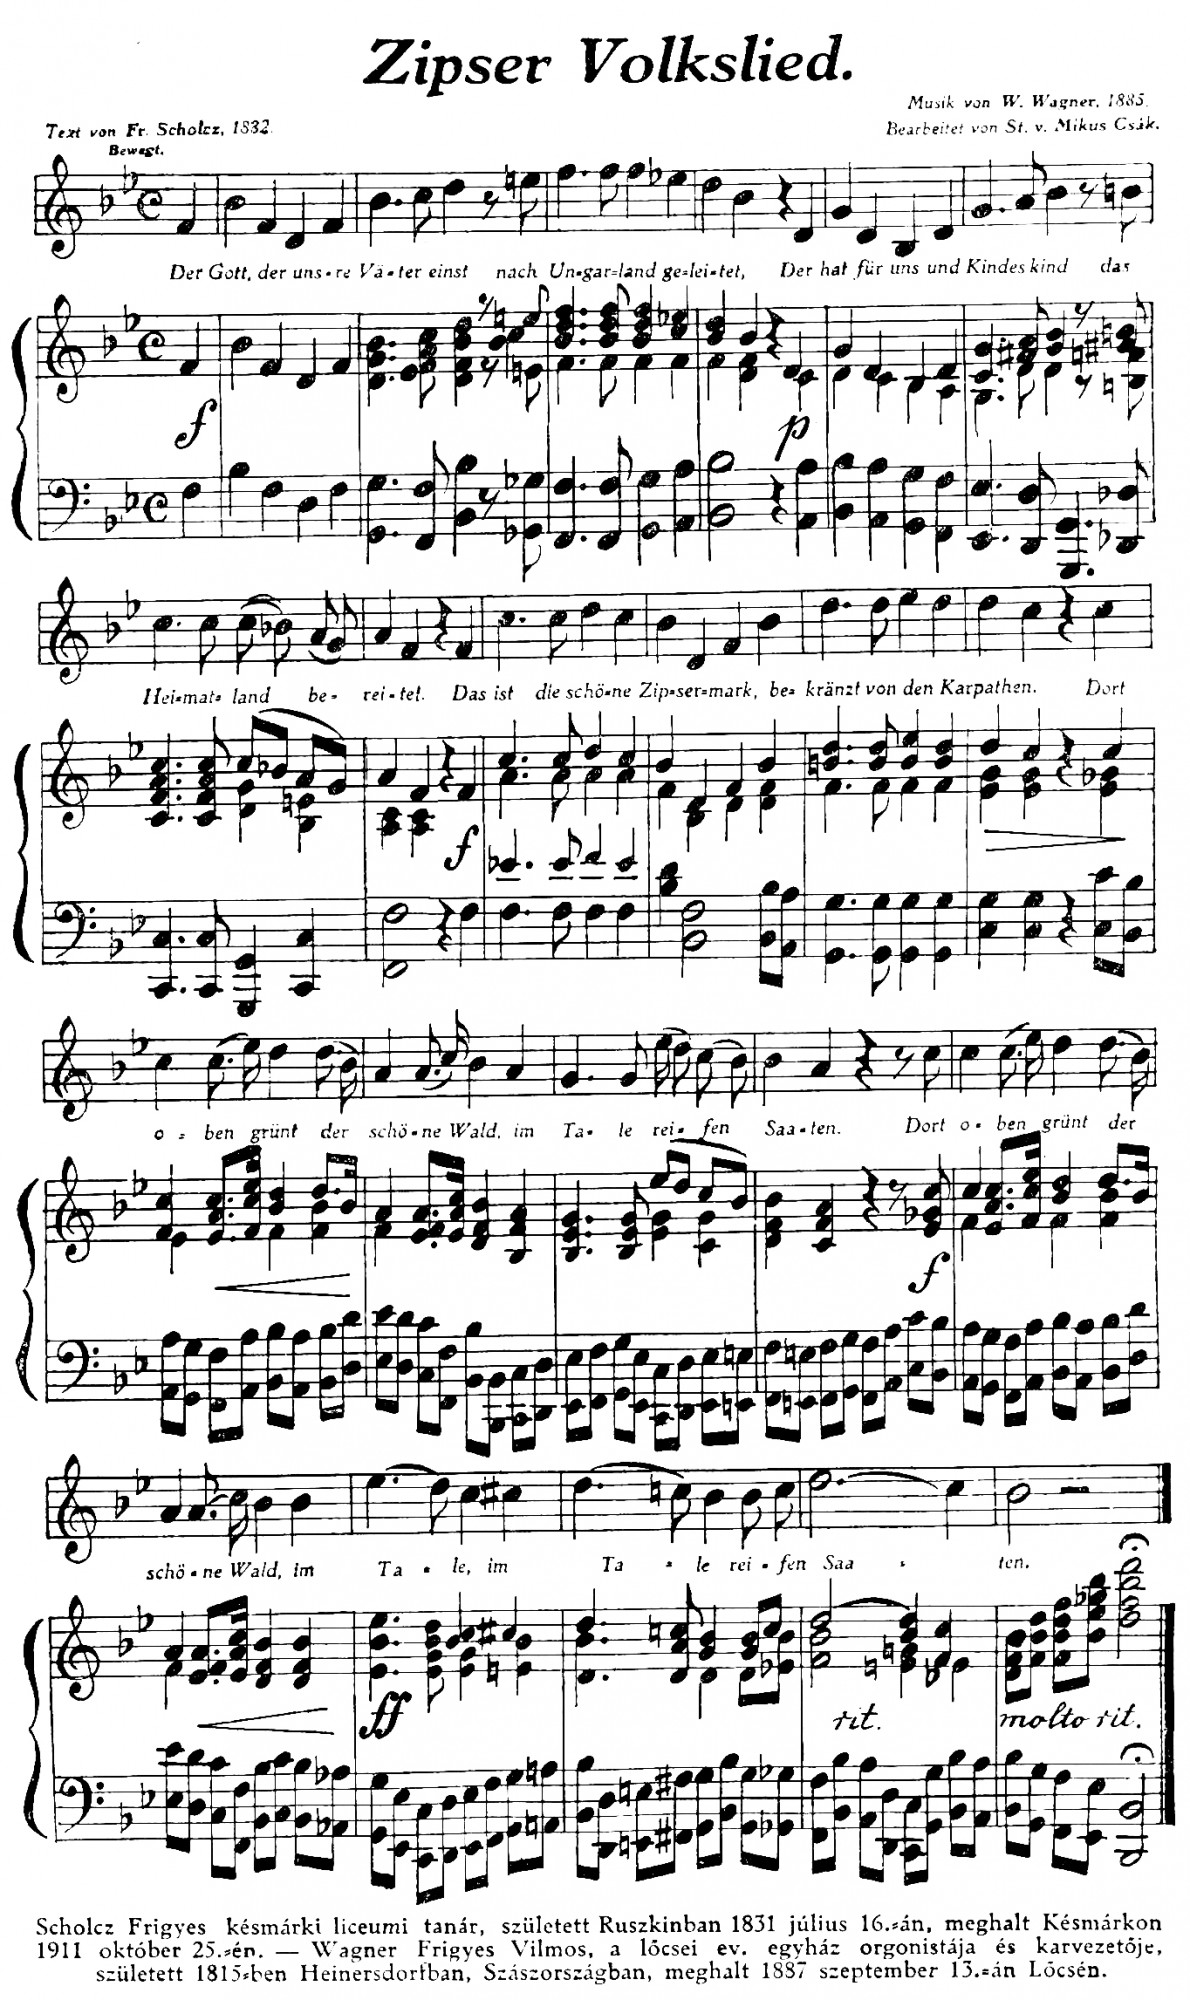 Text von Fr. Scholcz, 1882. - Musik von W. Wagner 1885.